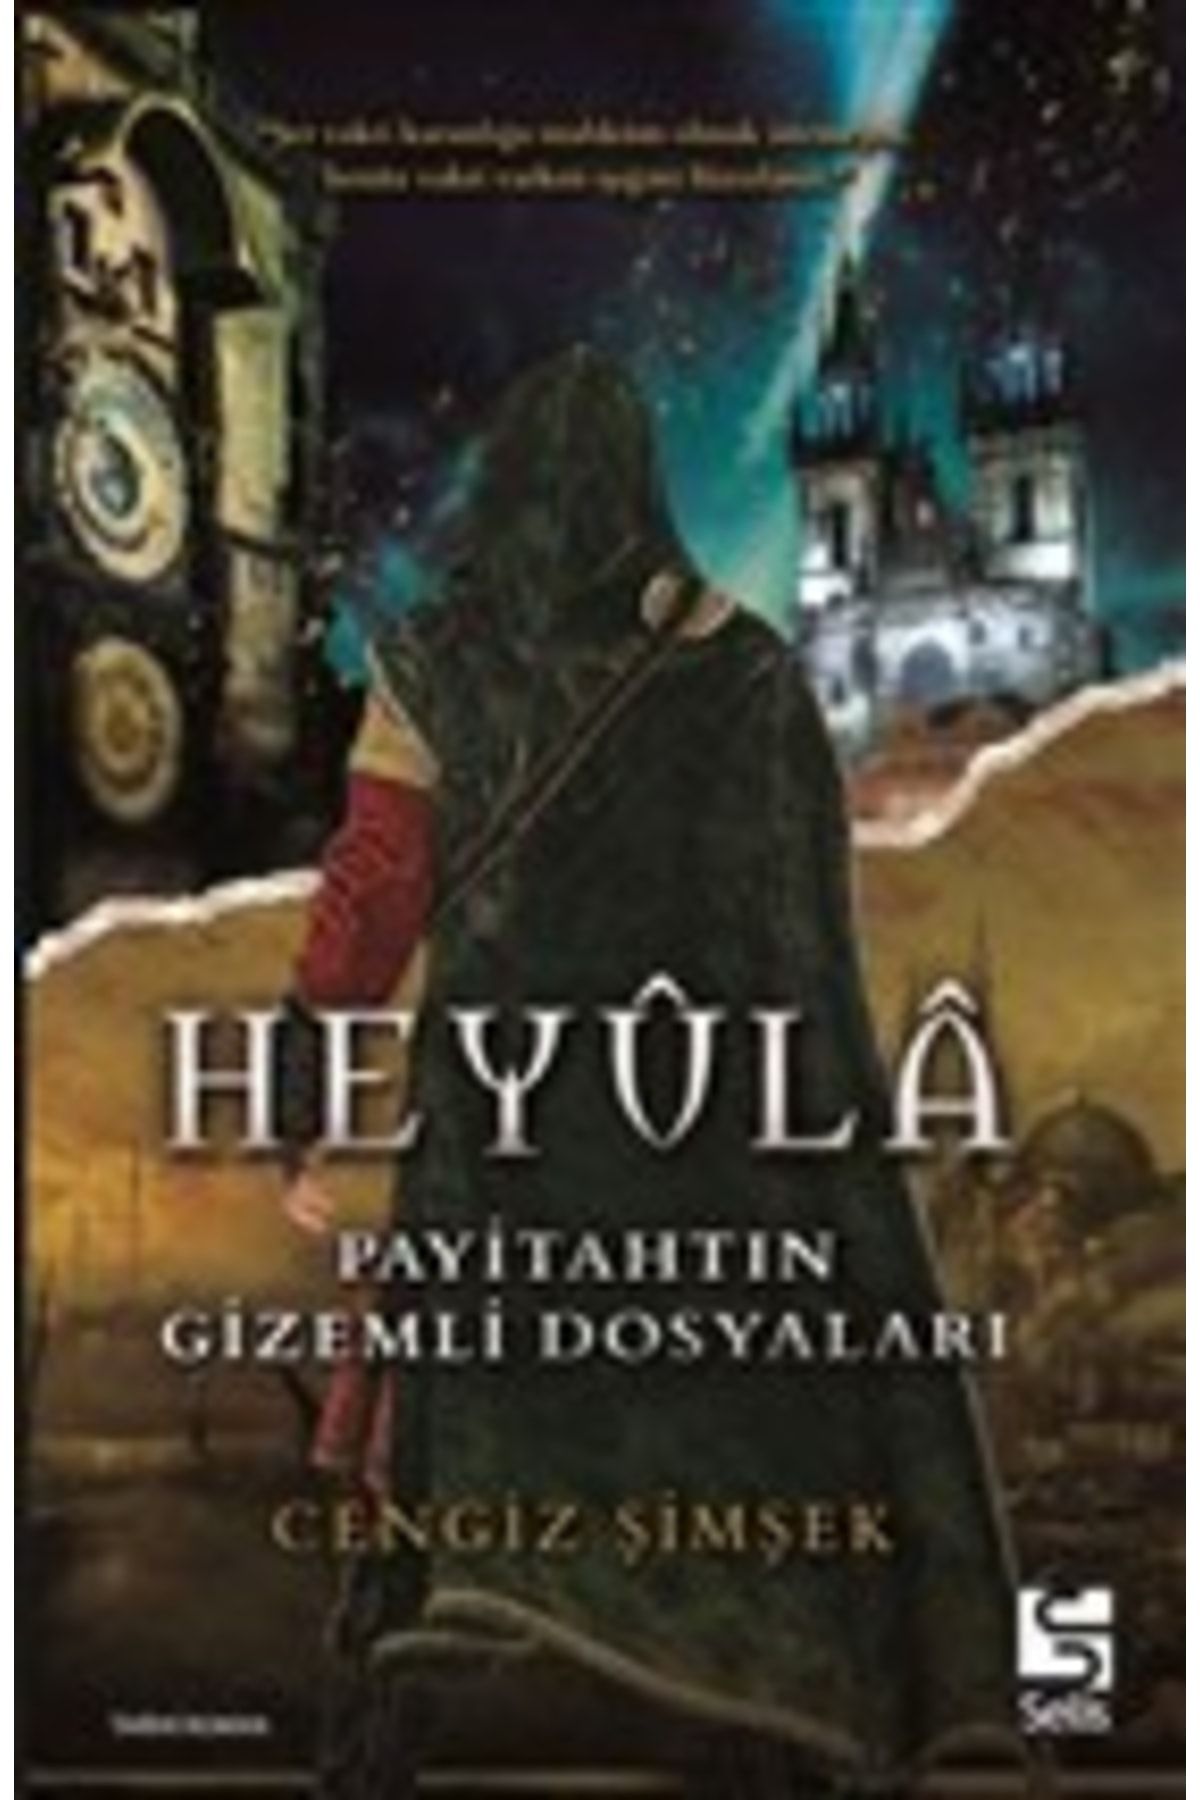 Selis Kitaplar Heyula & Payitahtın Gizemli Dosyaları